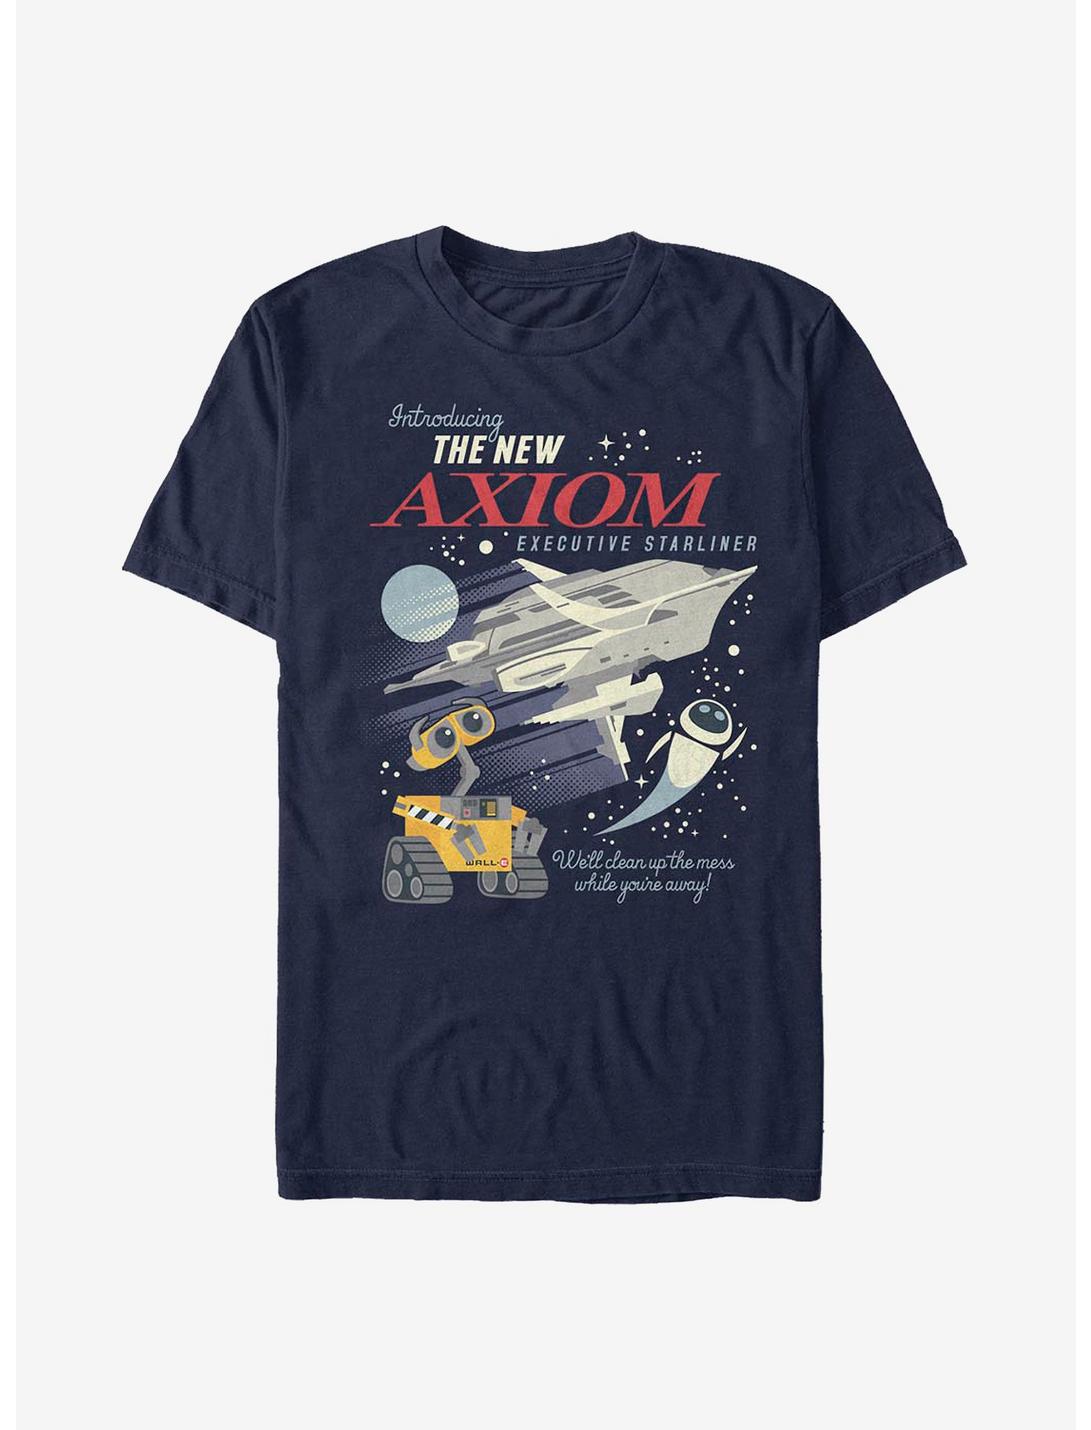 Disney Pixar WALL-E Axiom Poster T-Shirt, NAVY, hi-res